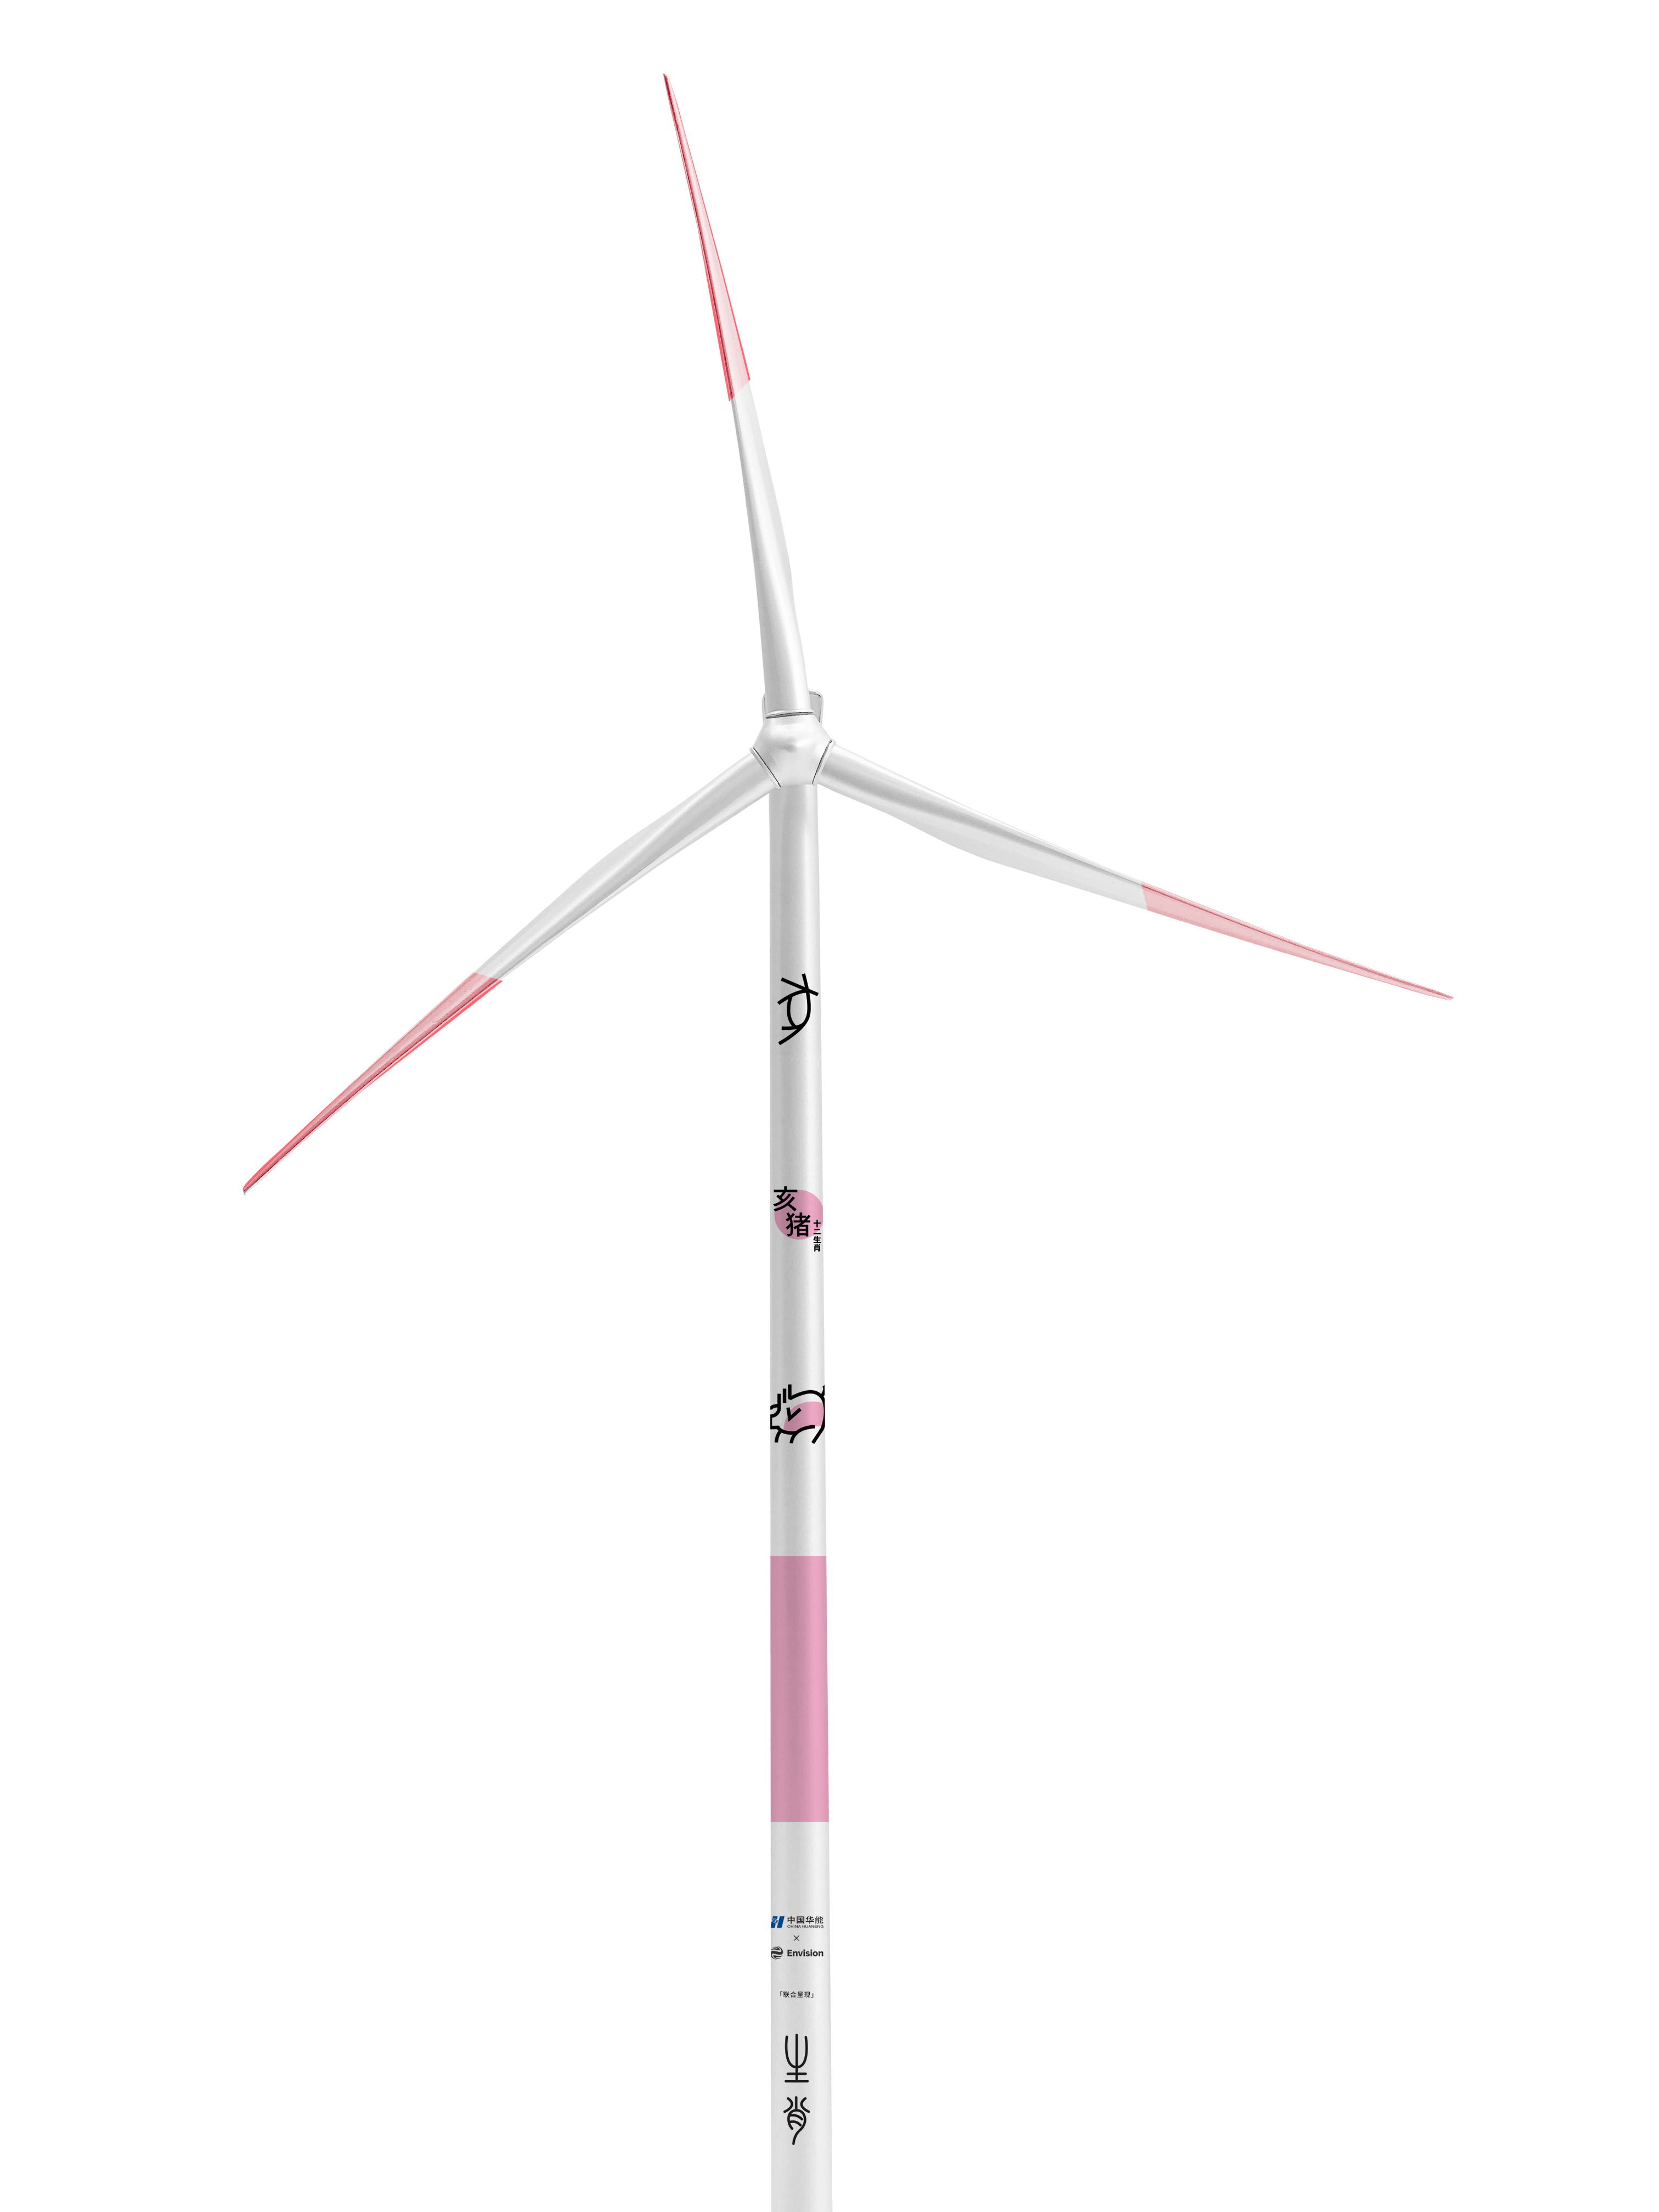 windmill origin